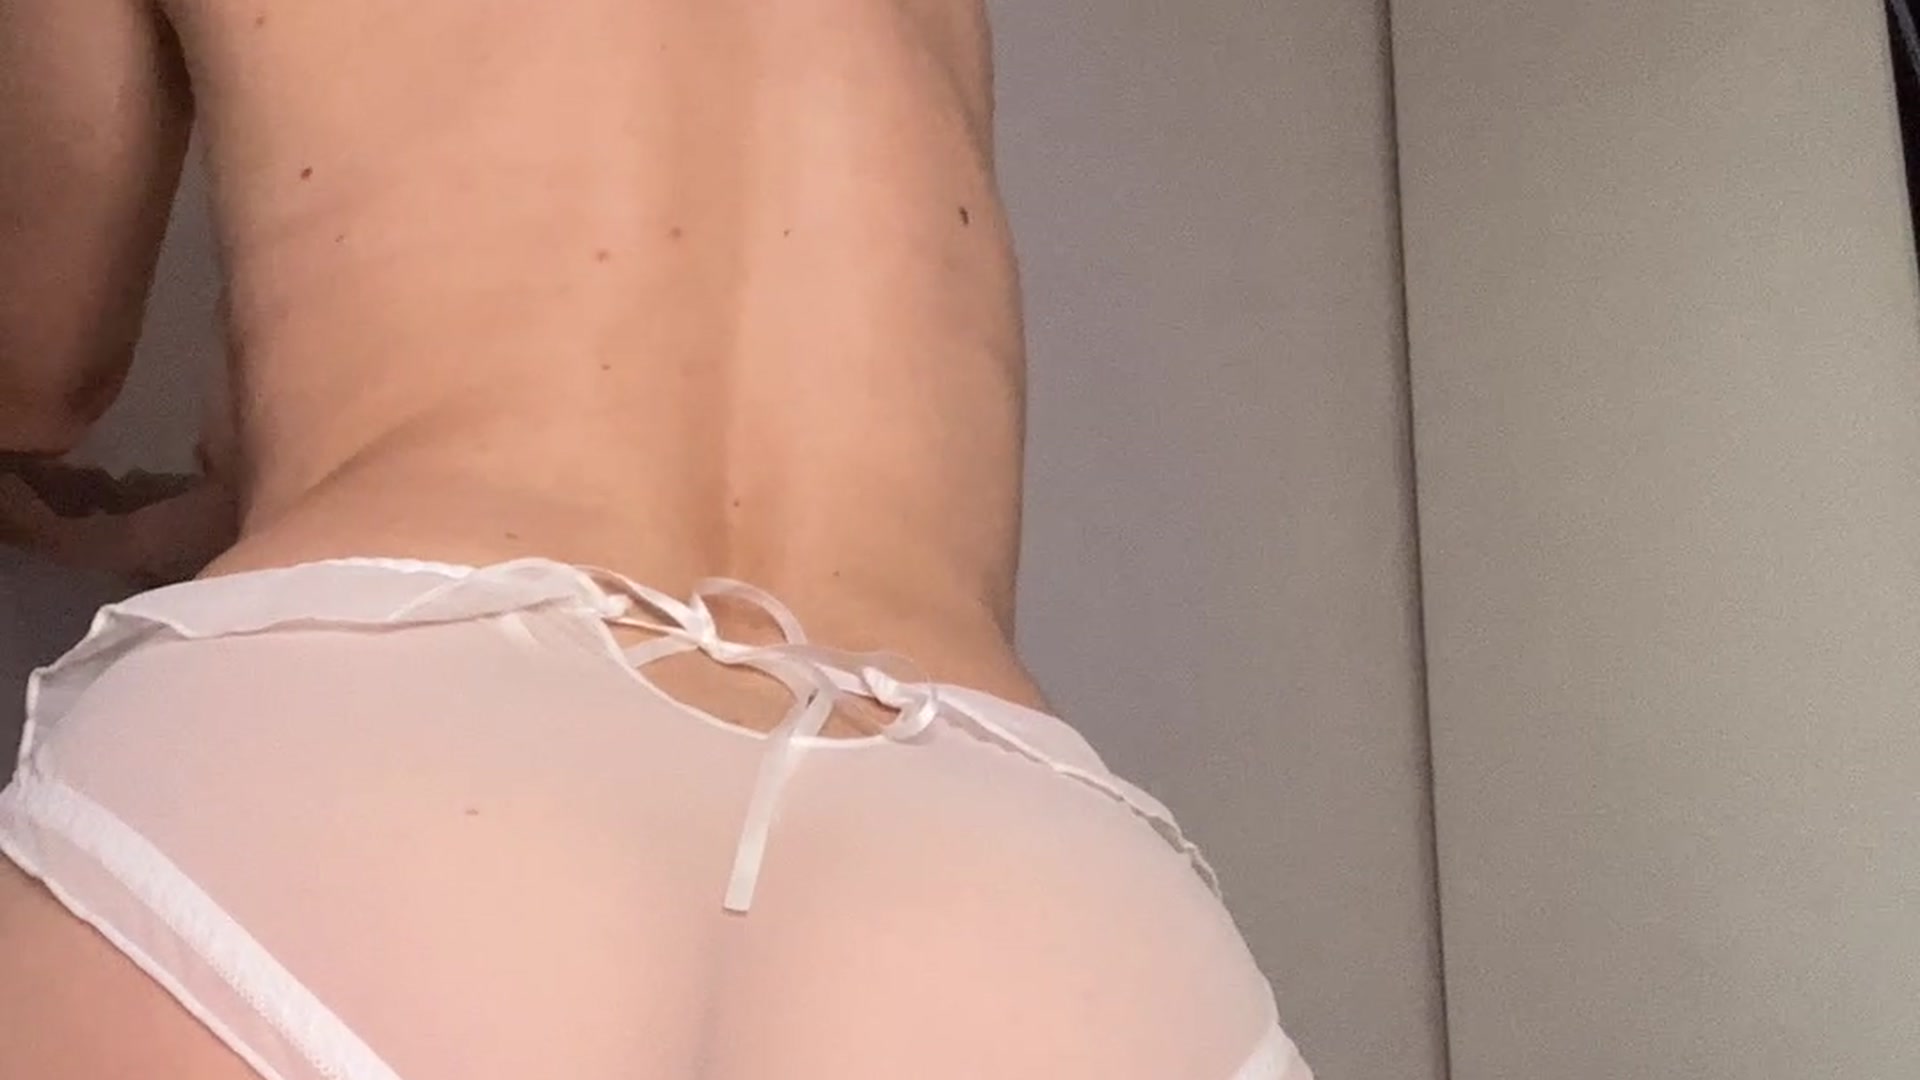 My new white panties